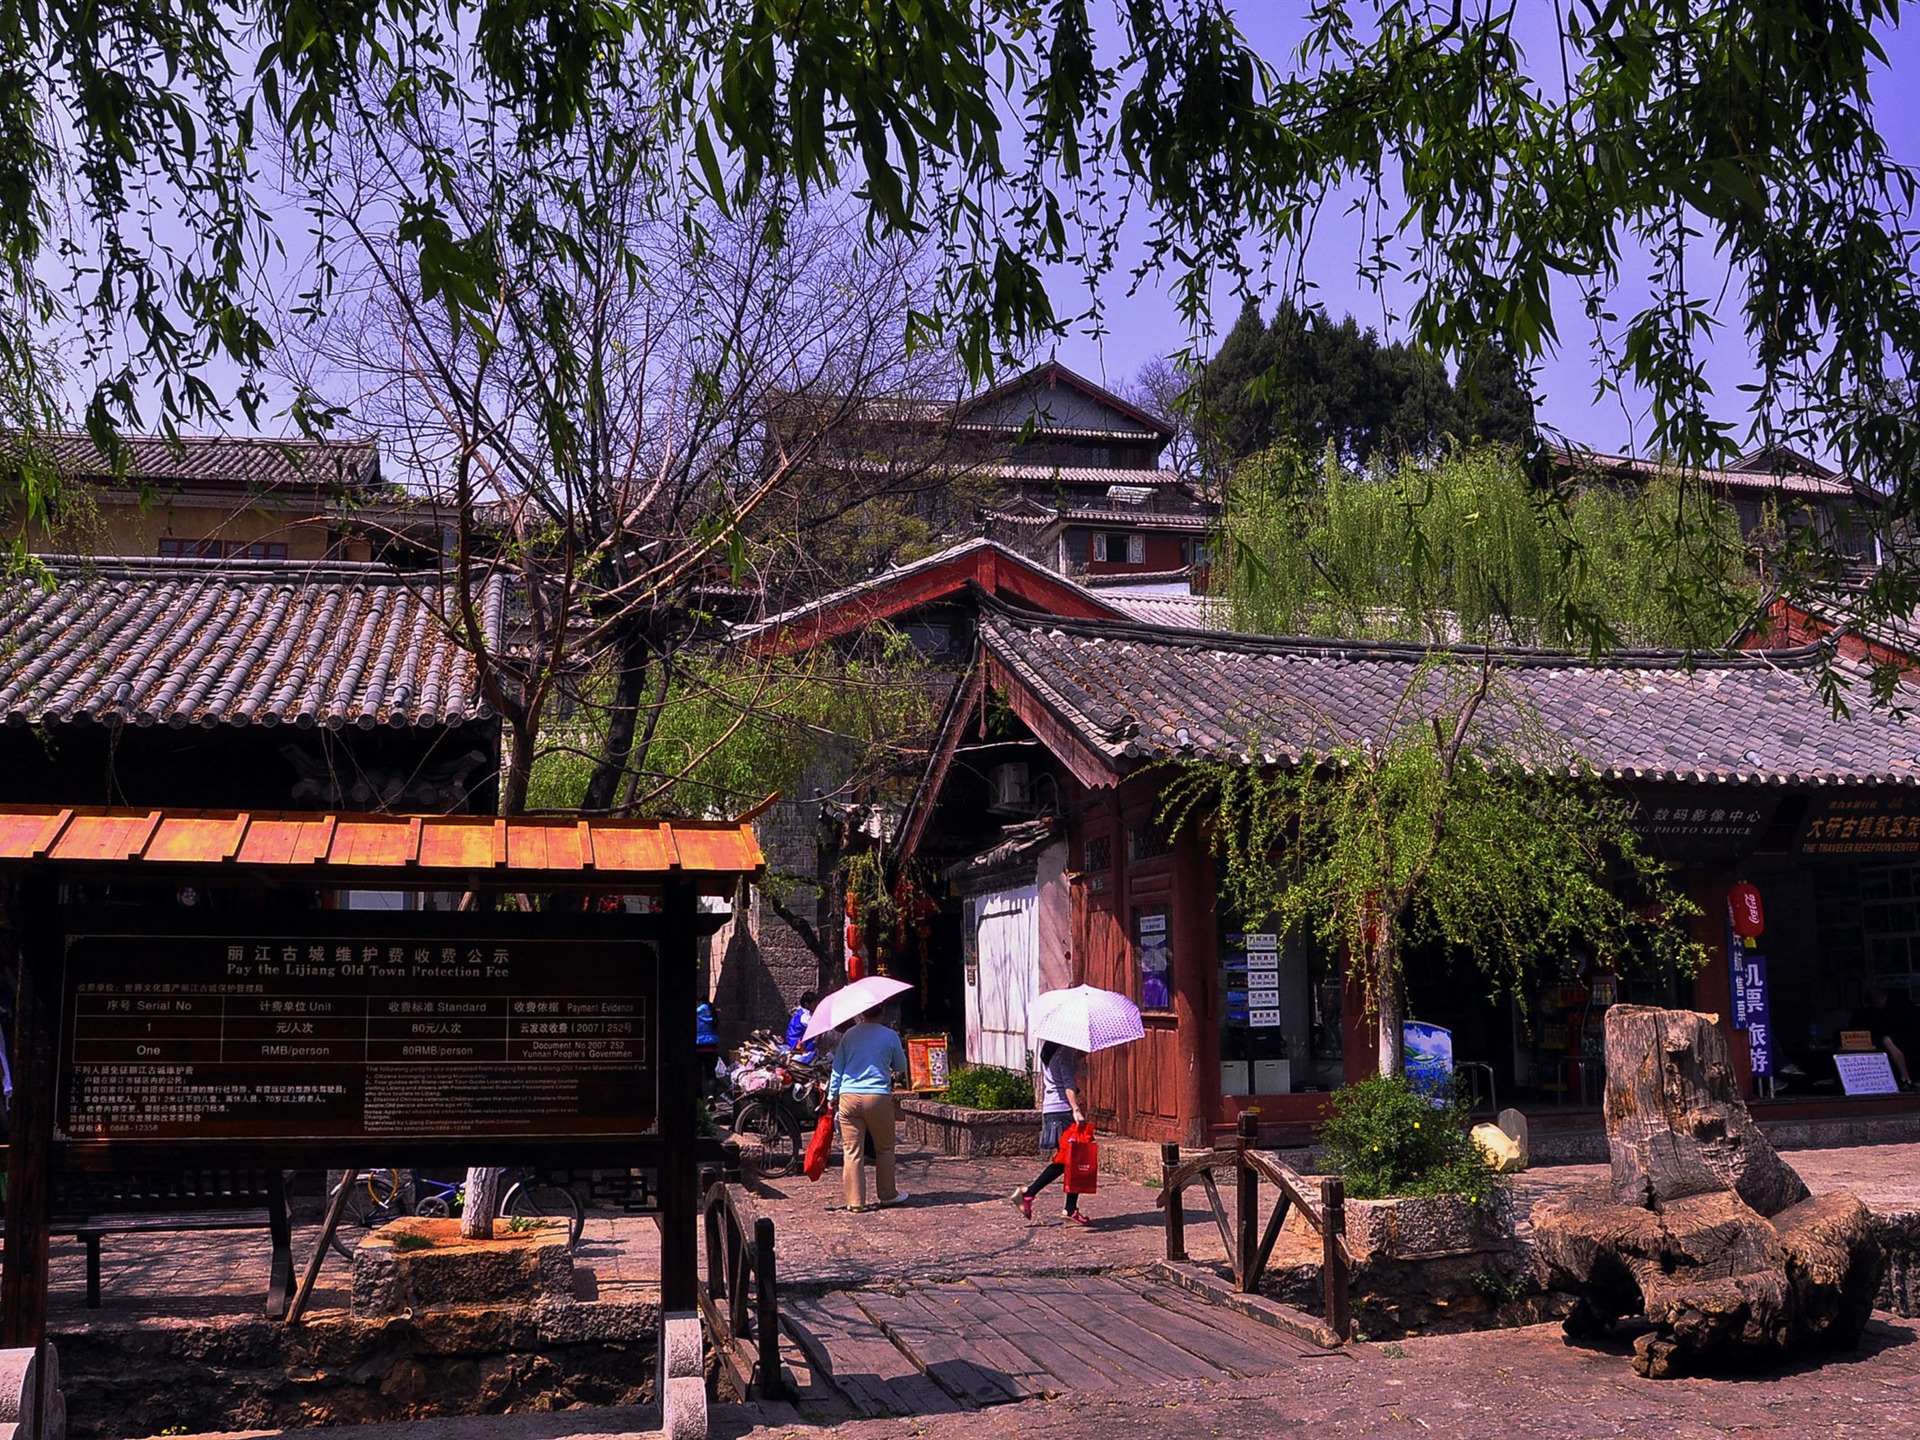 리장 고대 마을의 분위기 (2) (옛 홍콩 작동 확인) #26 - 1920x1440